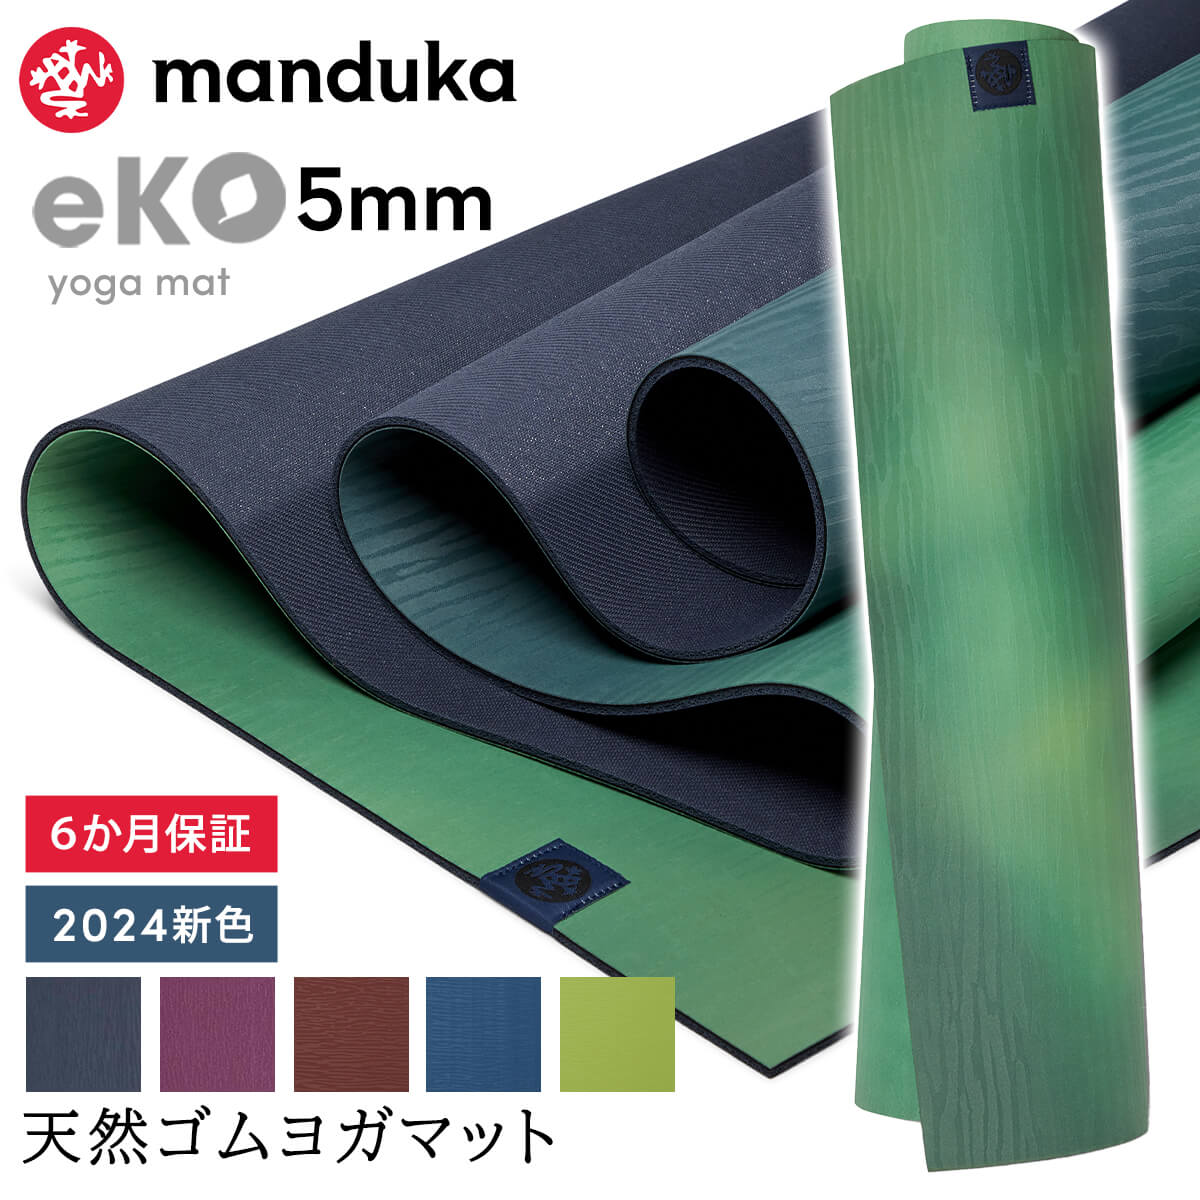 マンドゥカ Manduka ヨガマット エコ 5mm 《6か月保証》日本正規品 | eKO yoga mat 筋トレ ピラティス トレーニング …